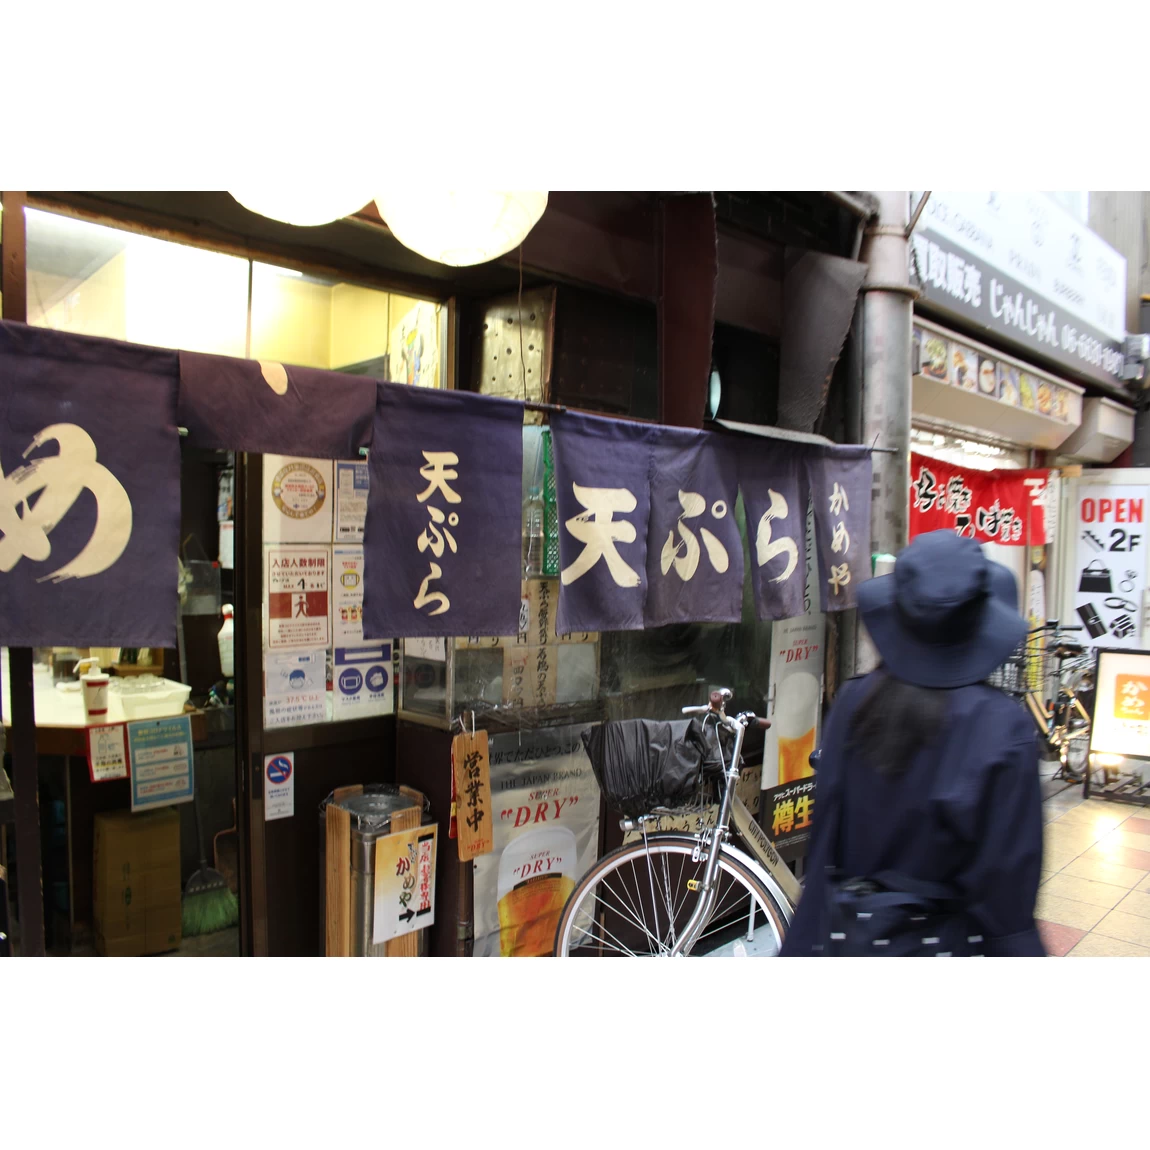 天ぷら店「かめや」